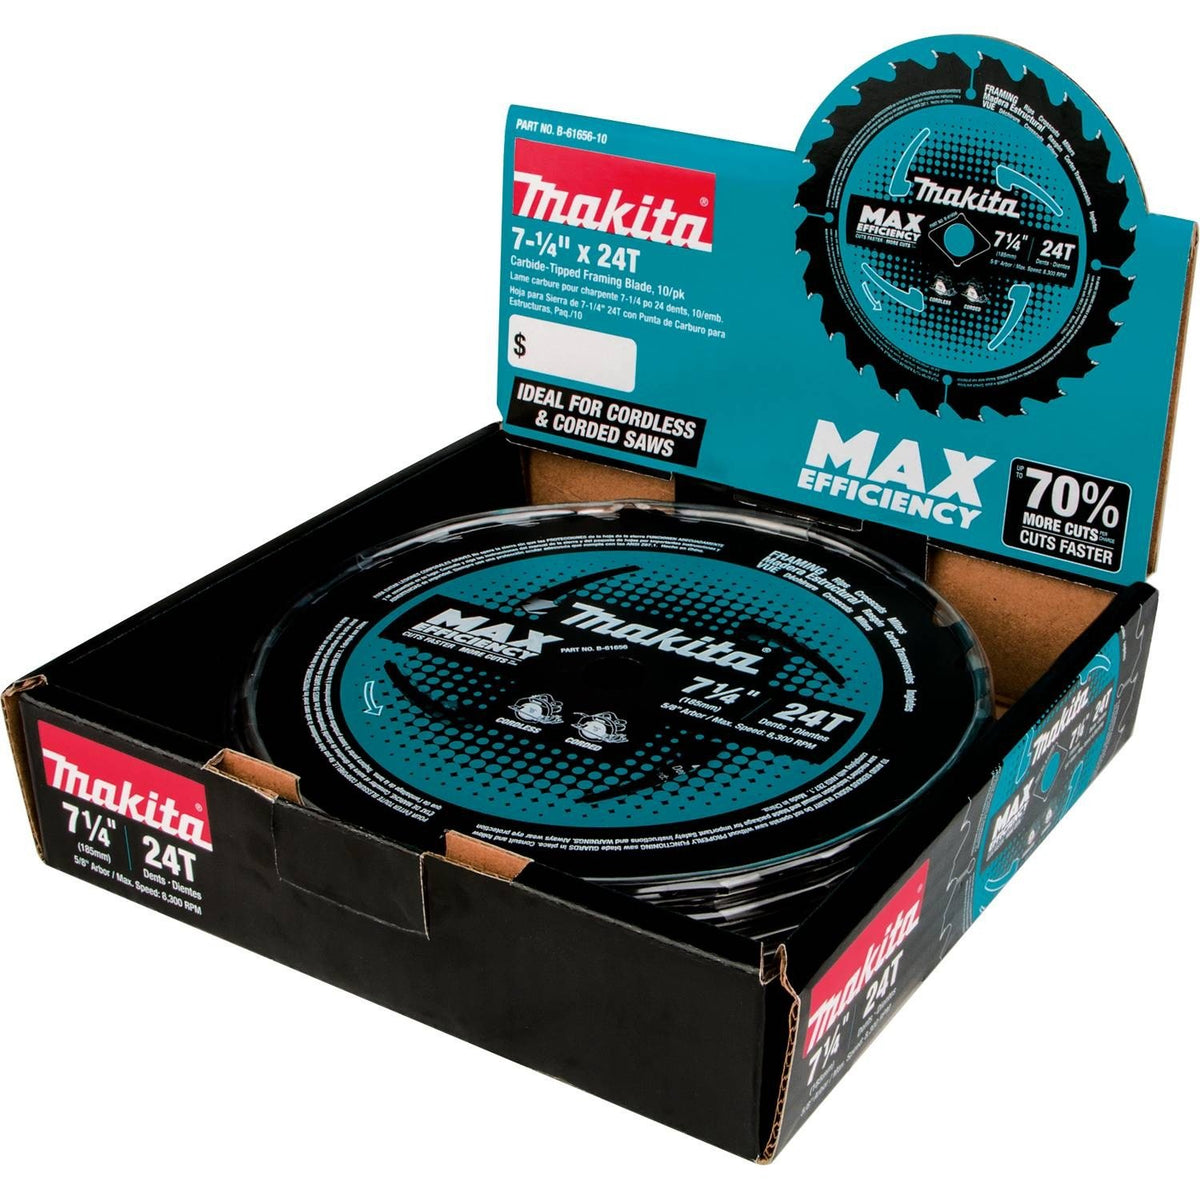 Makita B-61656-10 Max Efficiency Circular Saw Blade, 7-1/4"